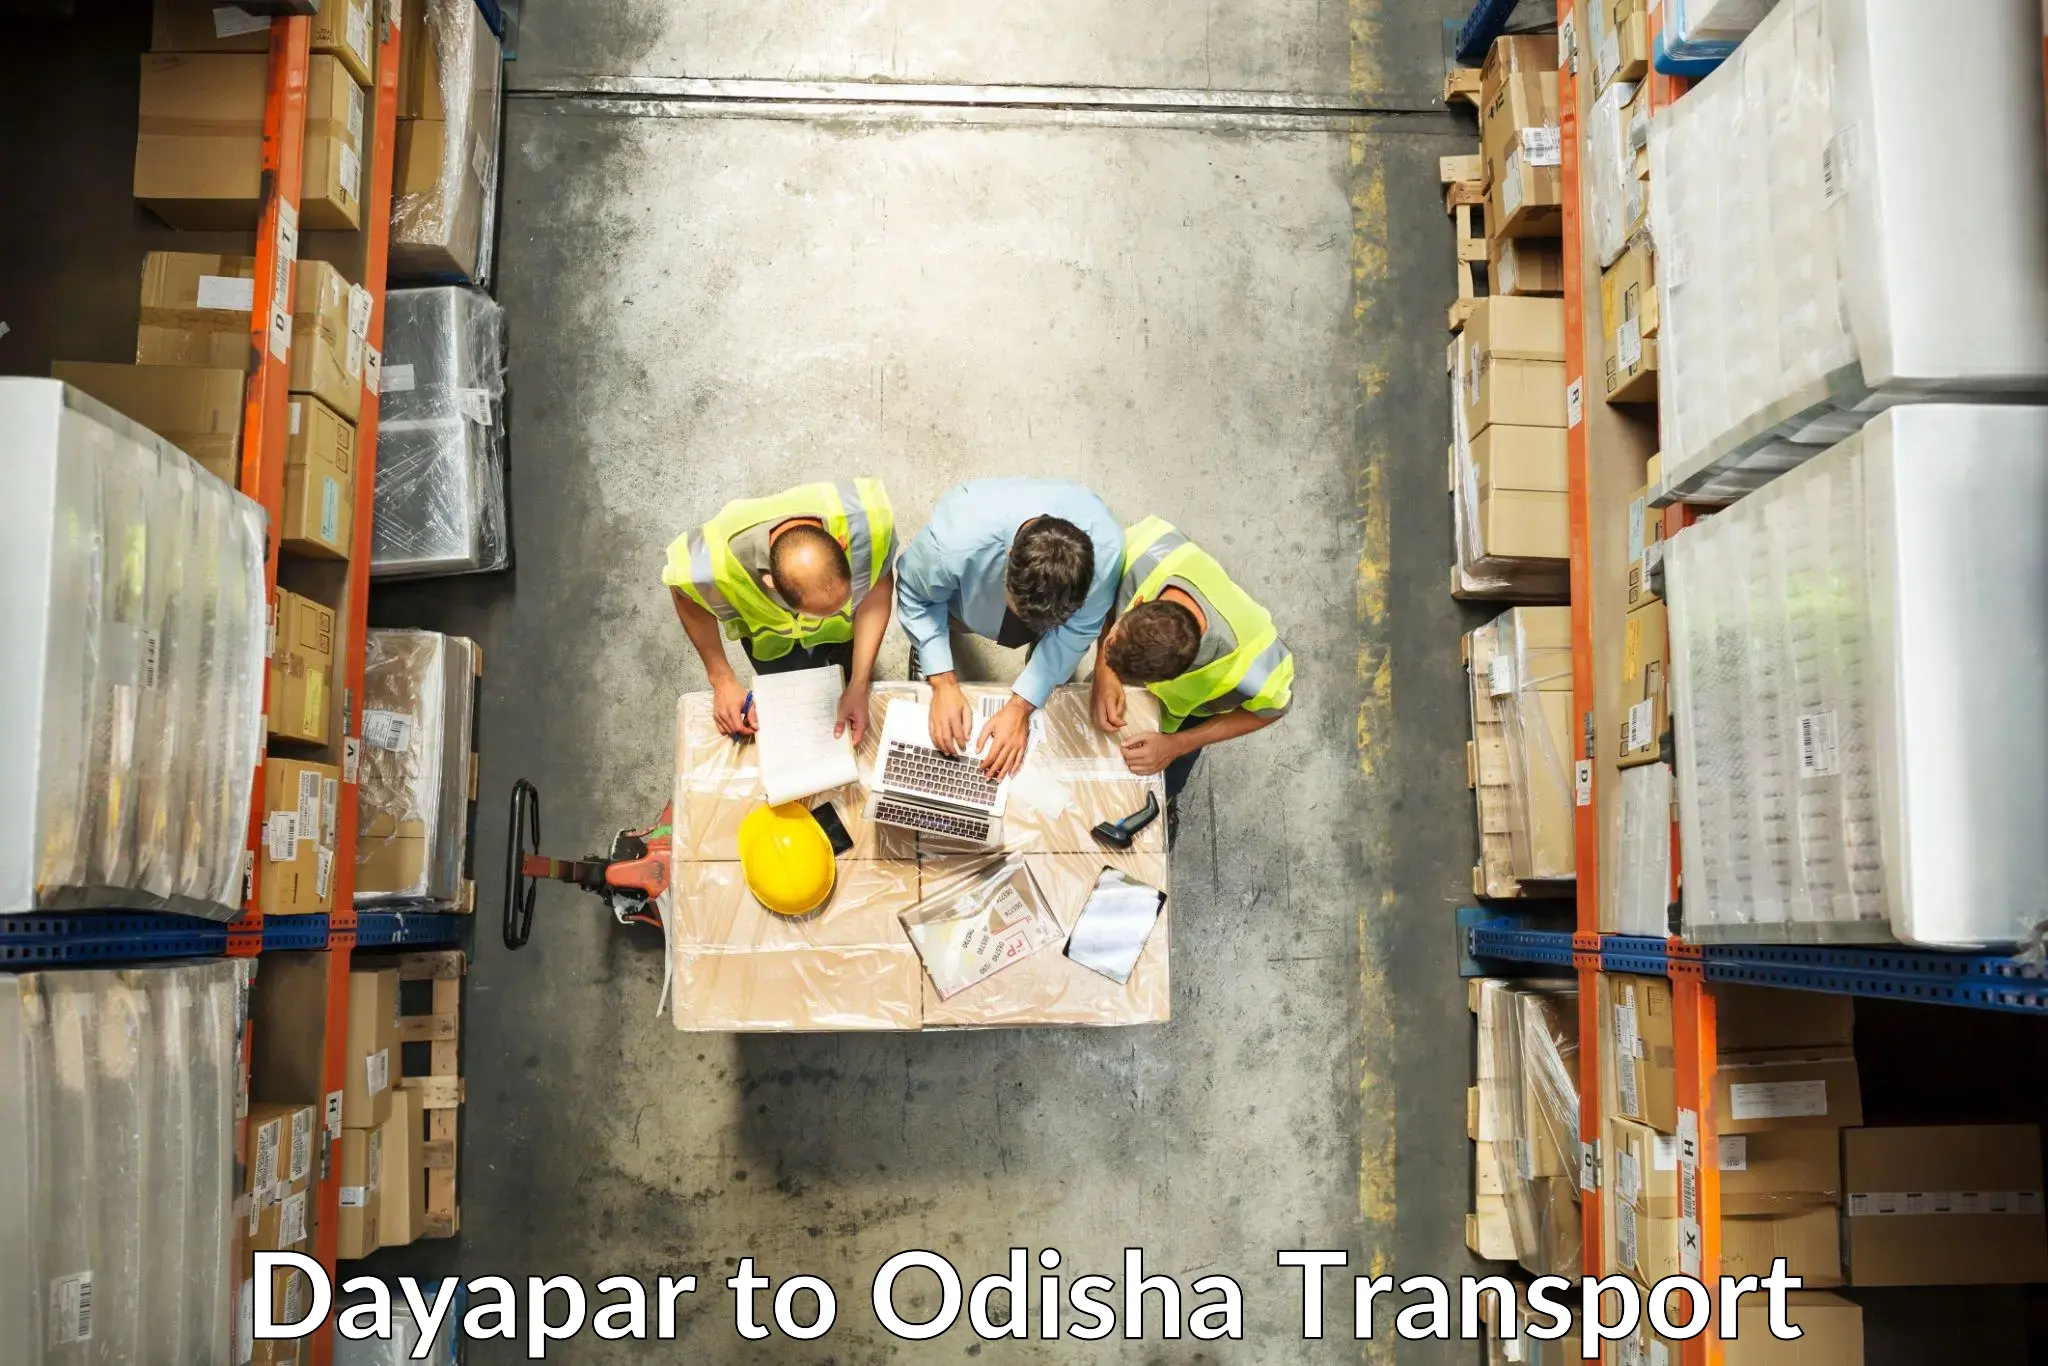 Daily transport service Dayapar to Kishorenagar